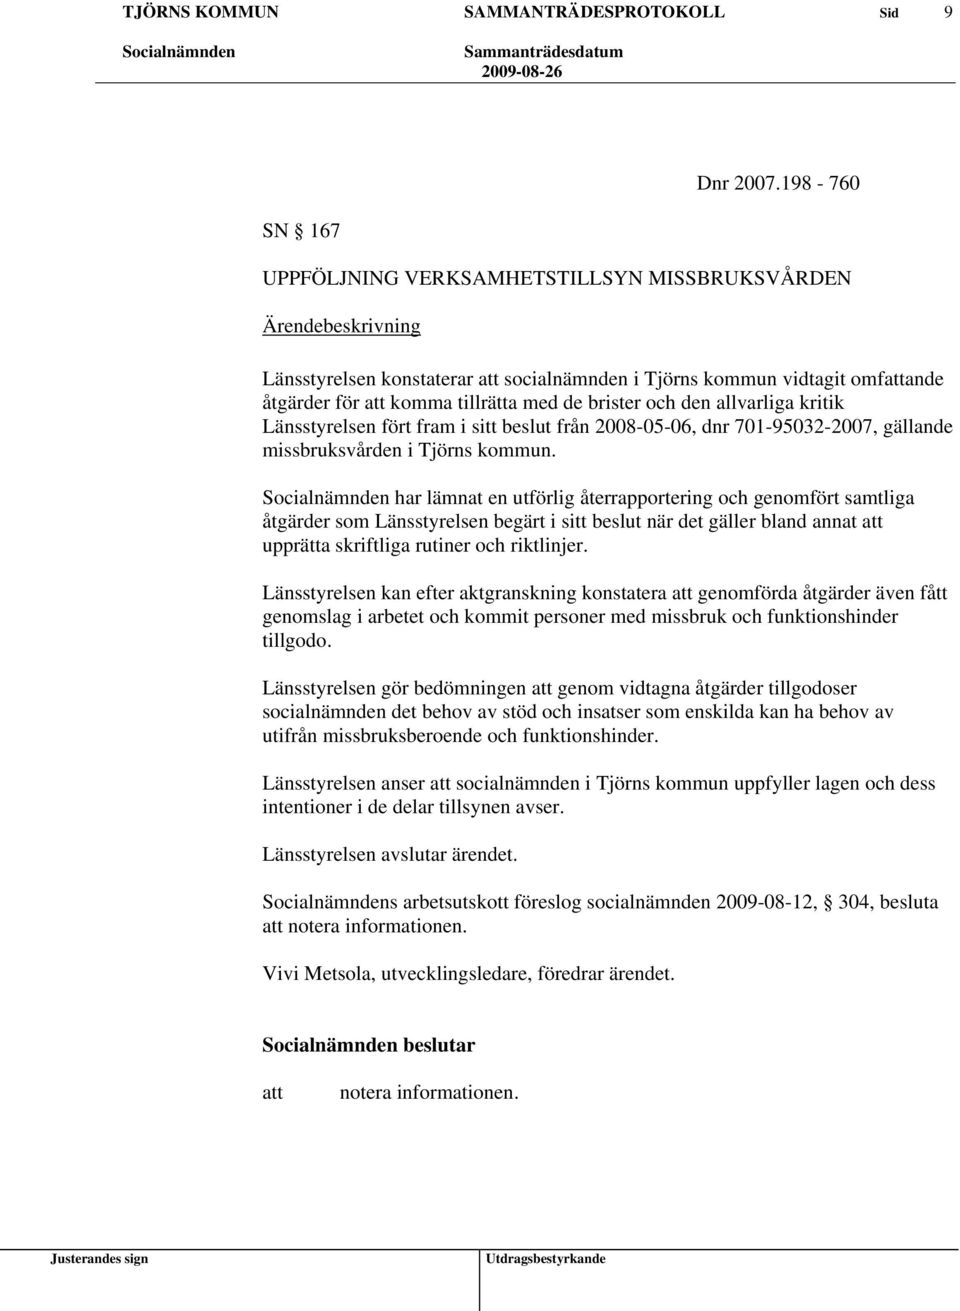 kritik Länsstyrelsen fört fram i sitt beslut från 2008-05-06, dnr 701-95032-2007, gällande missbruksvården i Tjörns kommun.